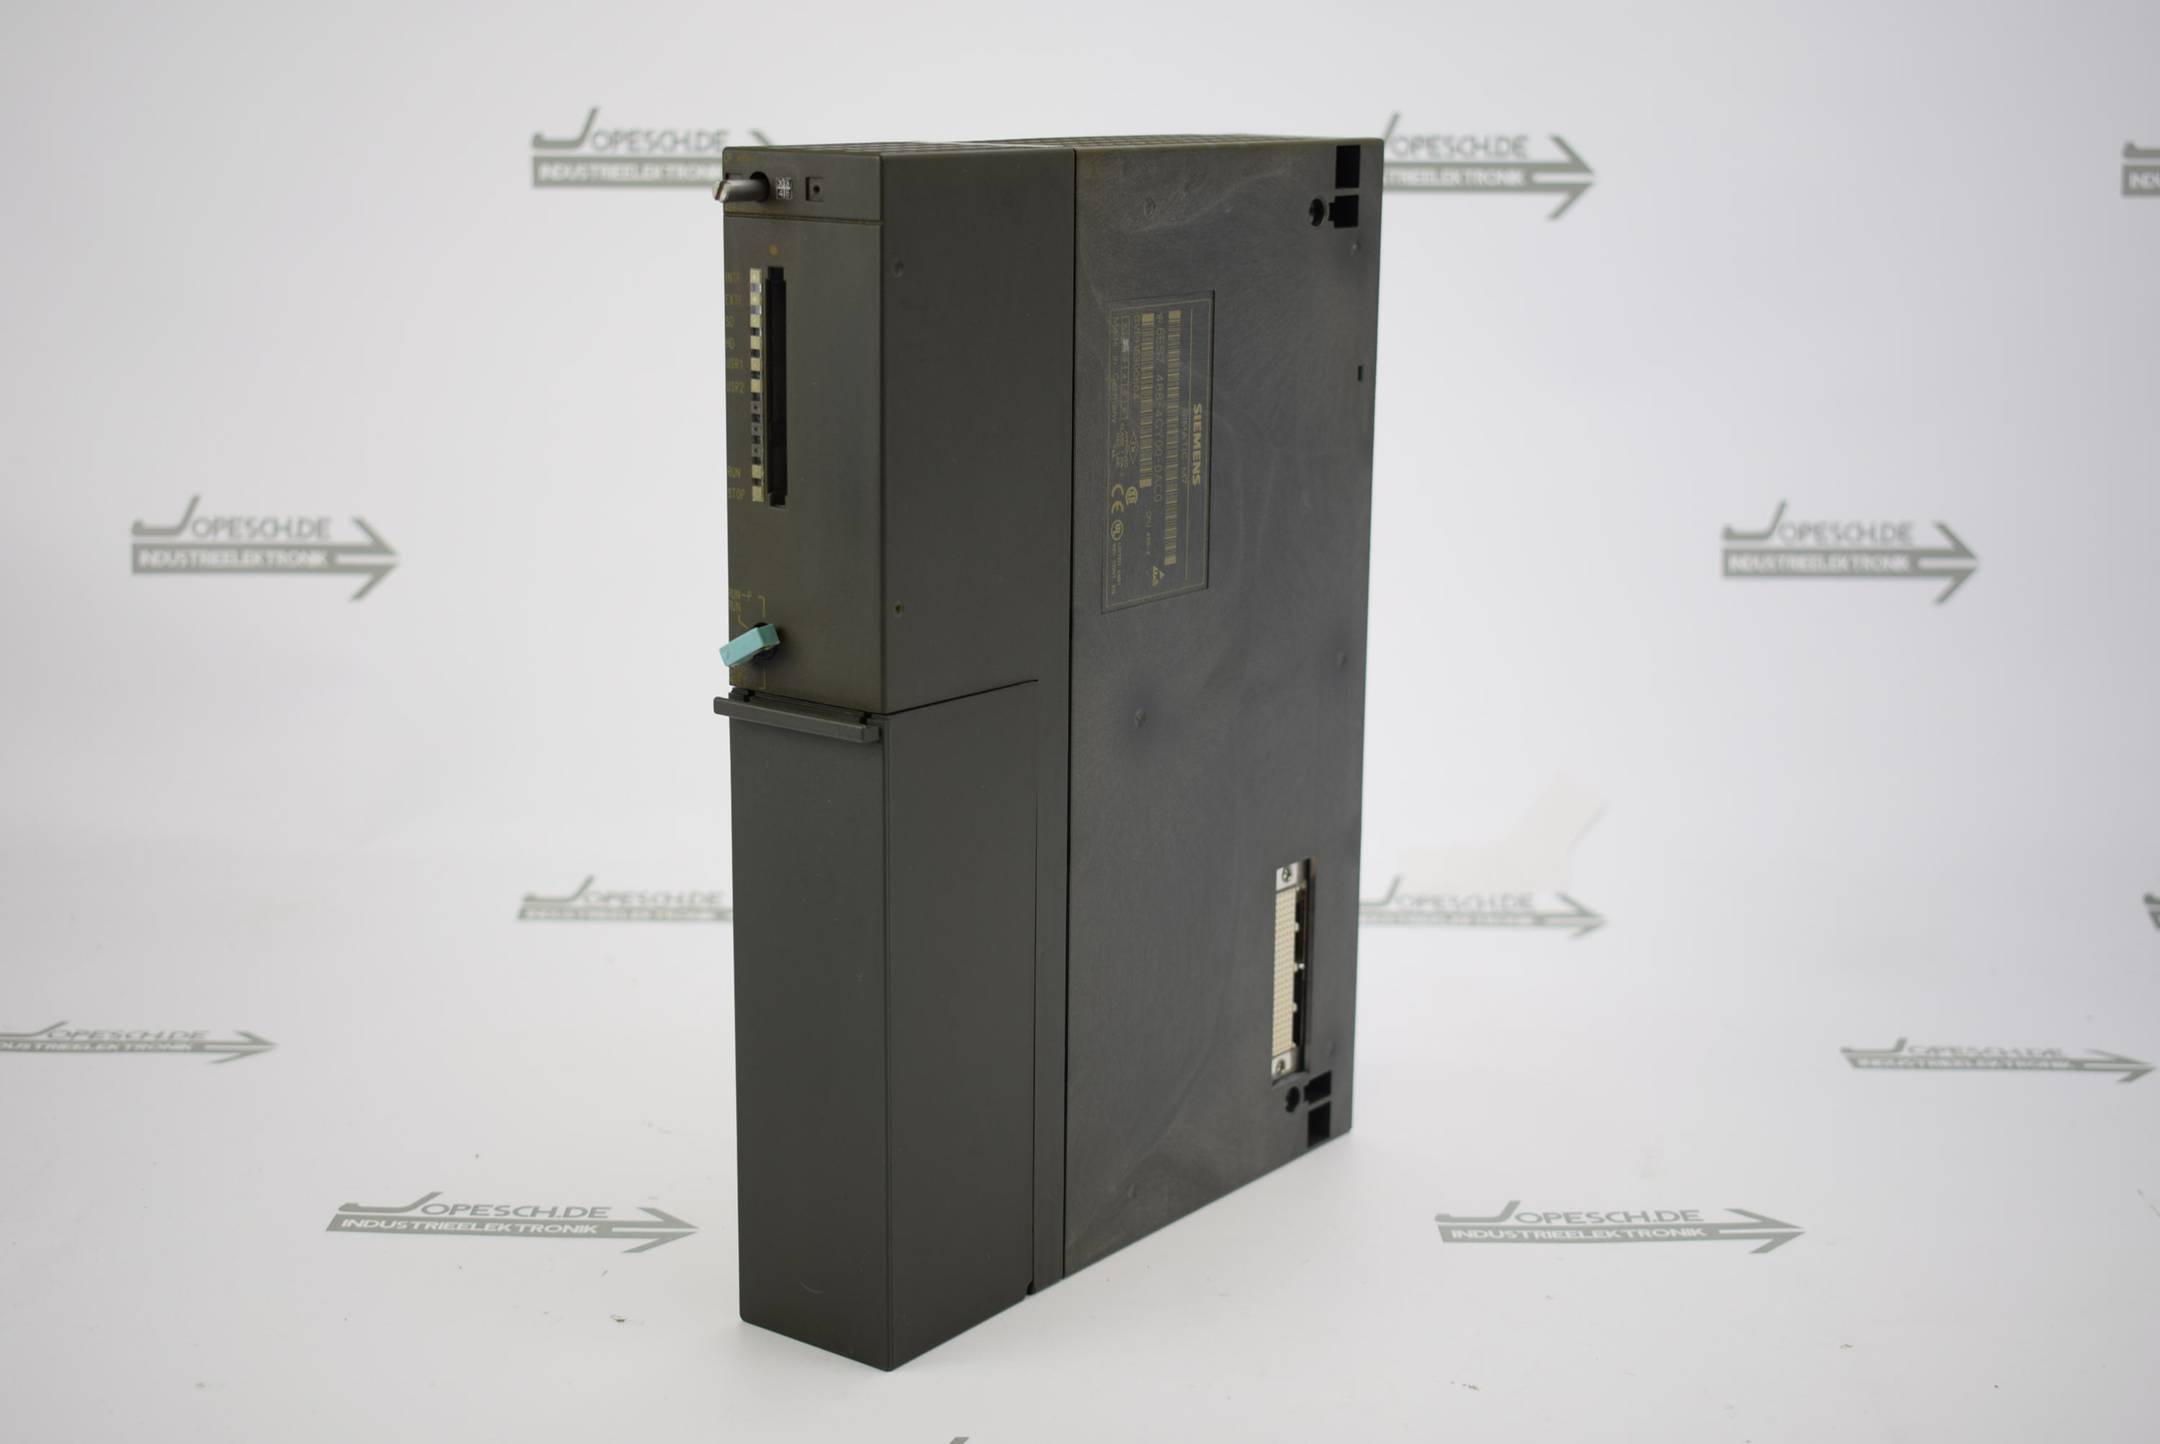 Siemens Simatic S7-400 CPU 488-4 6ES7488-4GY00-0AC0 ( 6ES7488-4GY00-0AC0 ) E2